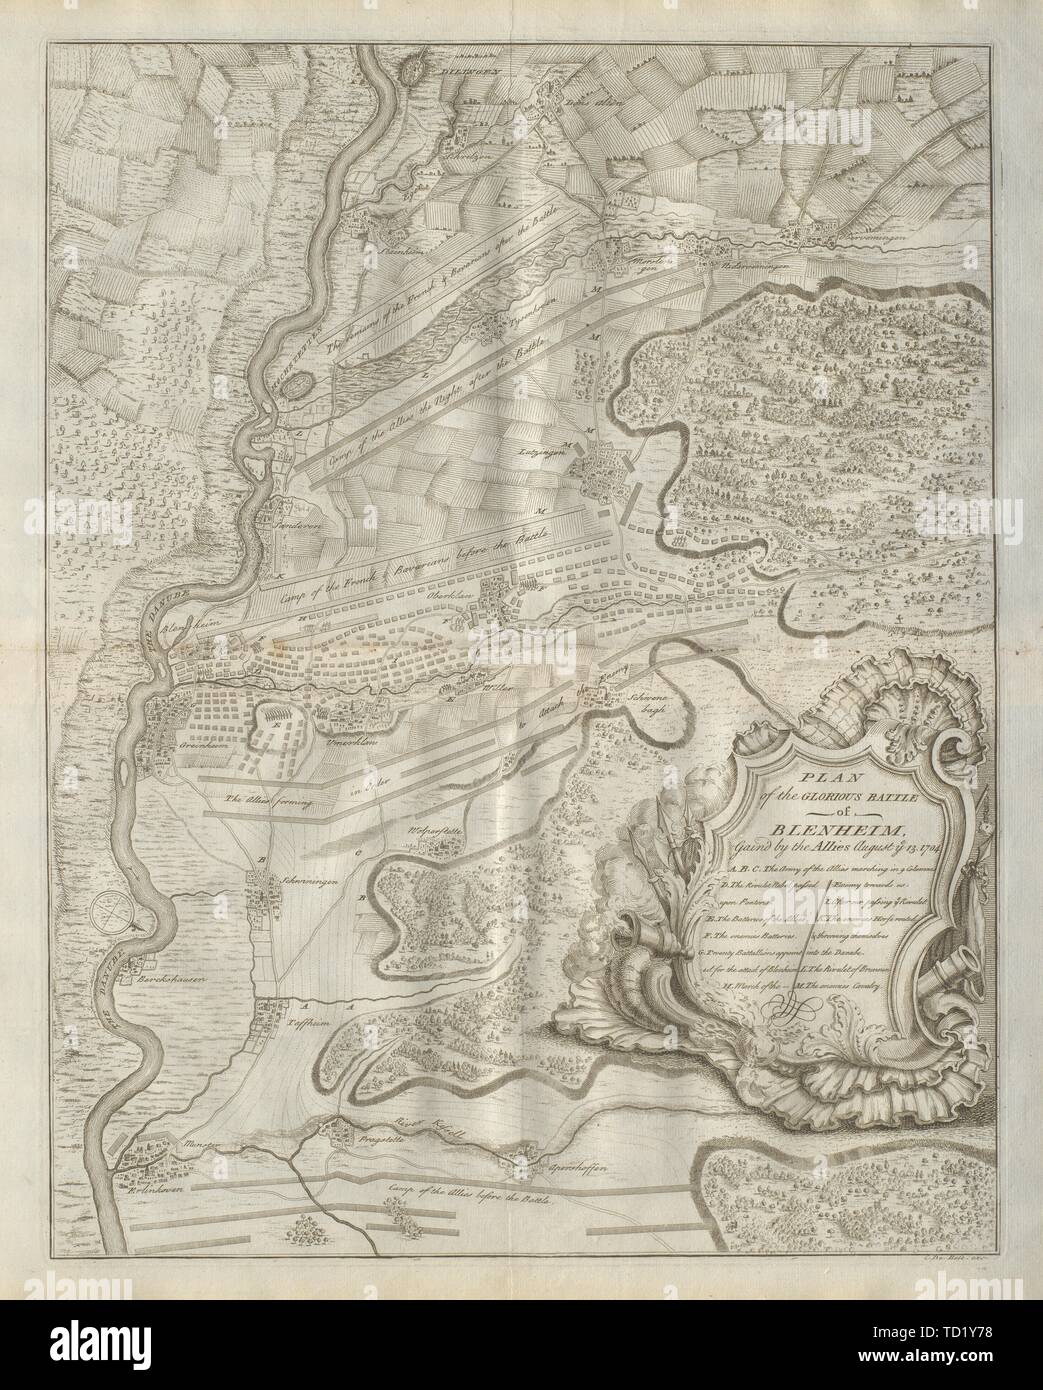 Pianta della gloriosa Battaglia di Blenheim, 1704. Höchstädt. DU BOSC 1736 mappa vecchia Foto Stock